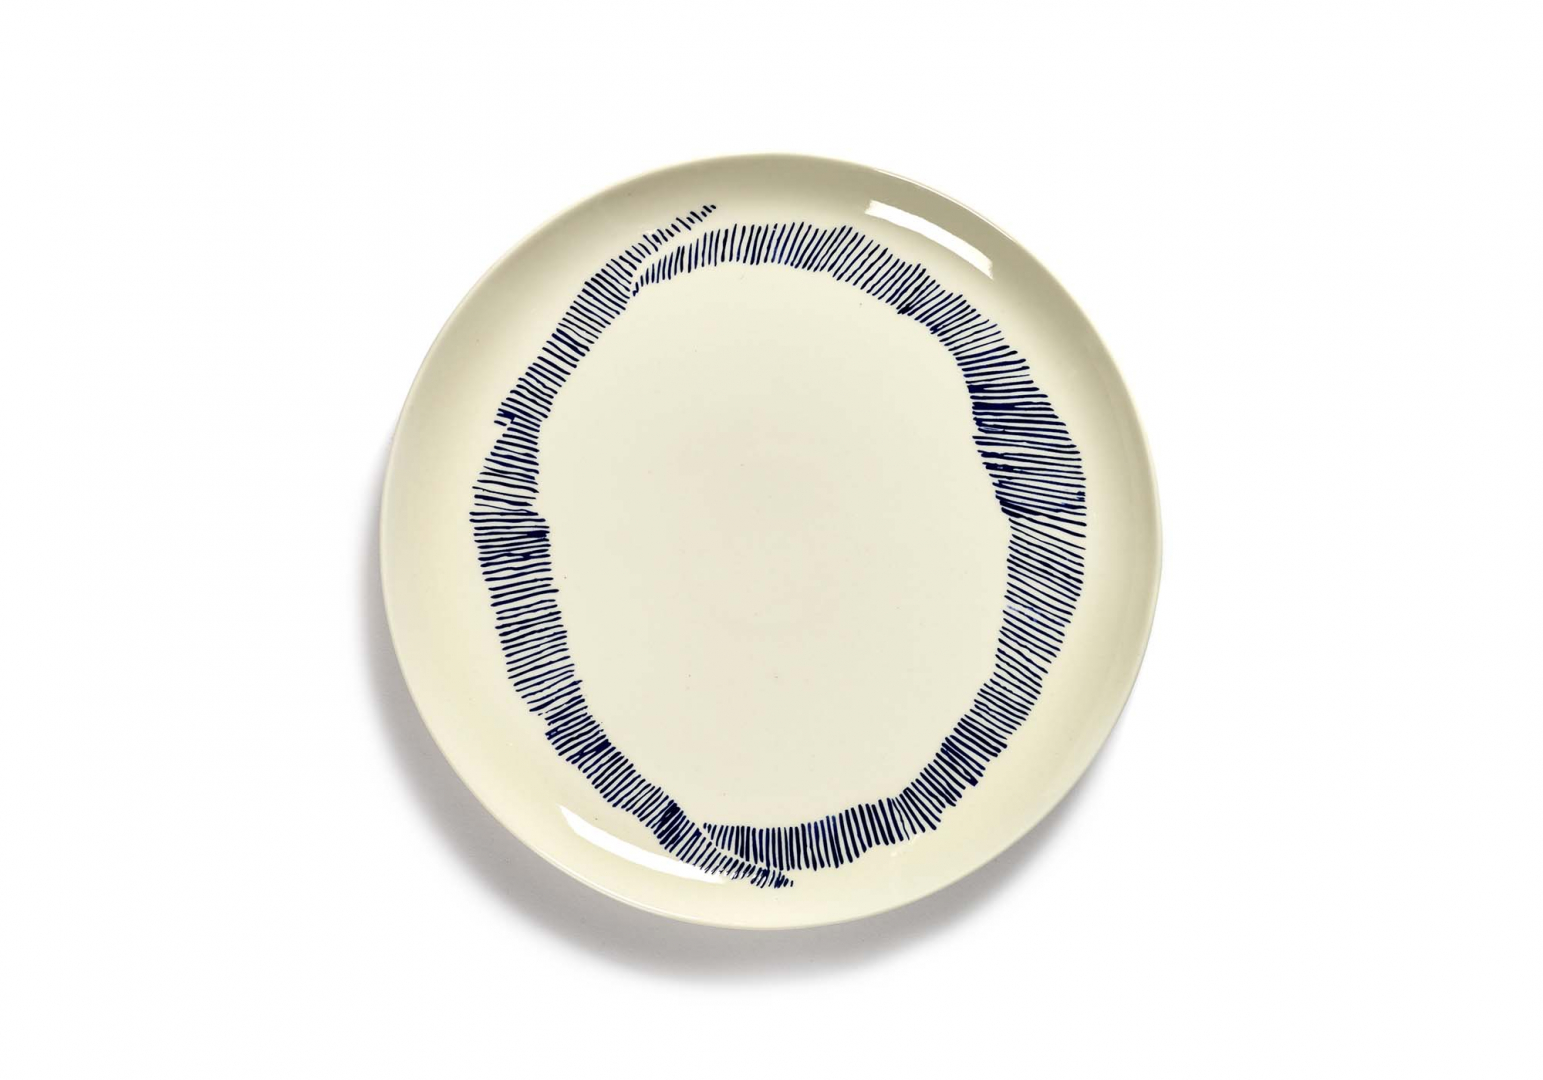 Assiette Feast design L blanche swirl stripes bleu - SERAX